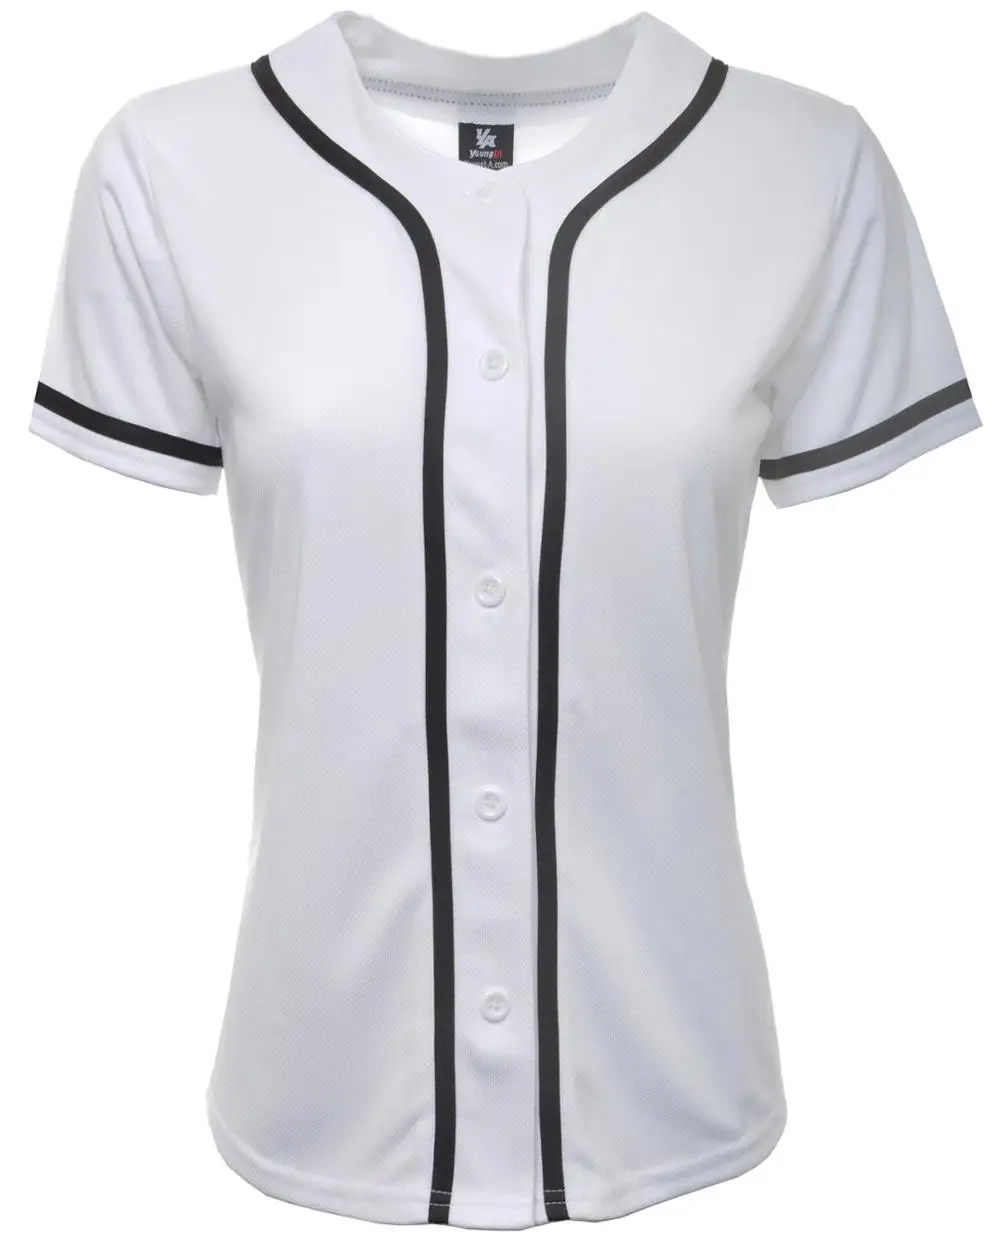 plain baseball shirts